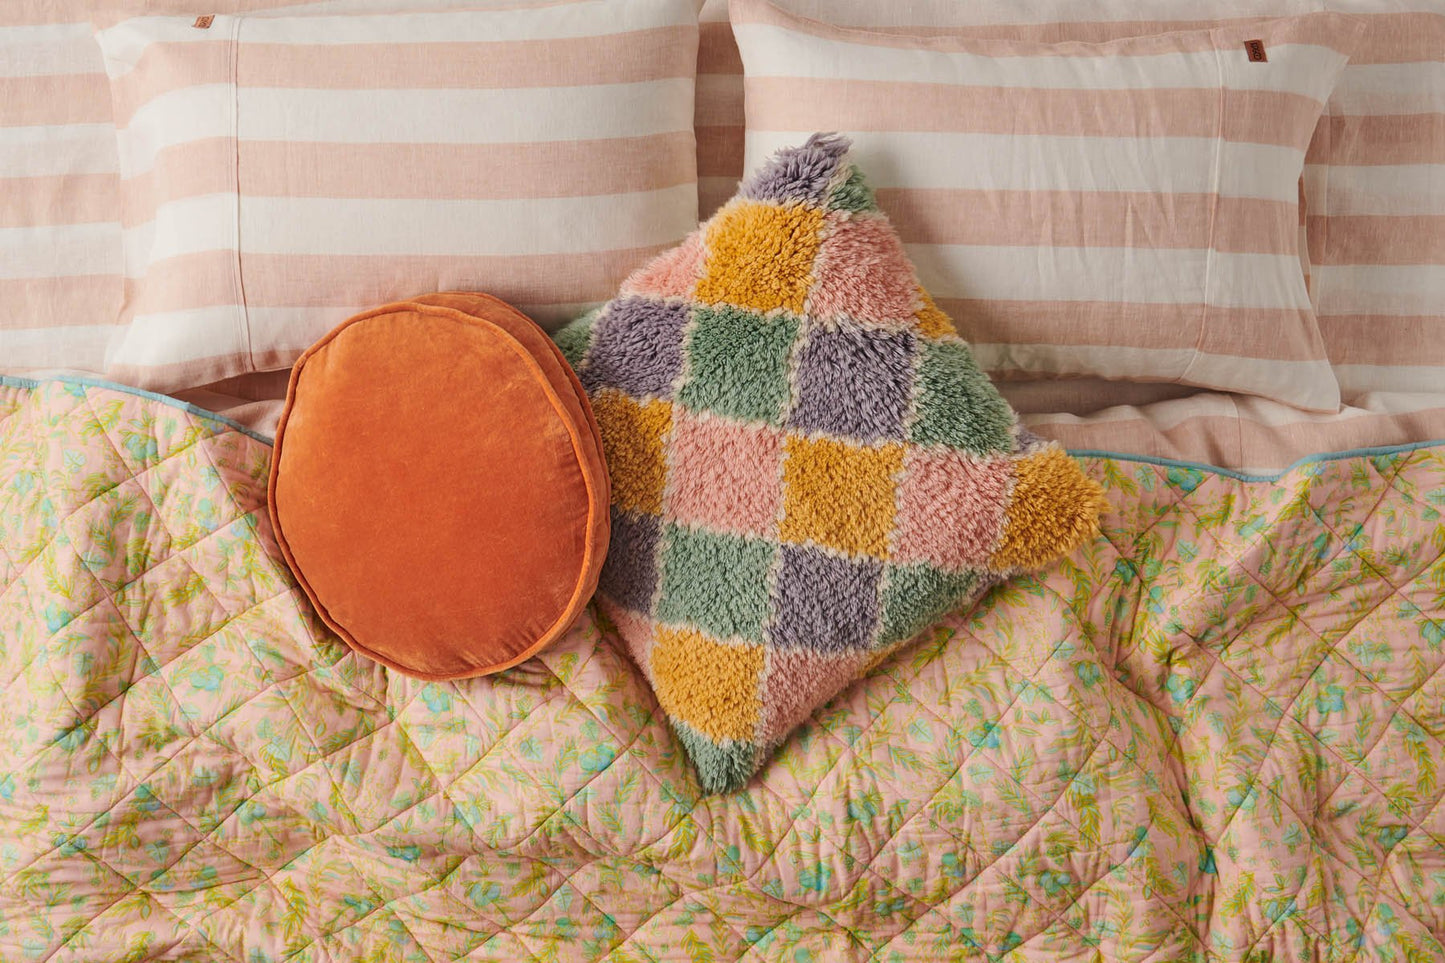 Harlequin Pastel Wool Shag Cushion - Kip&Co